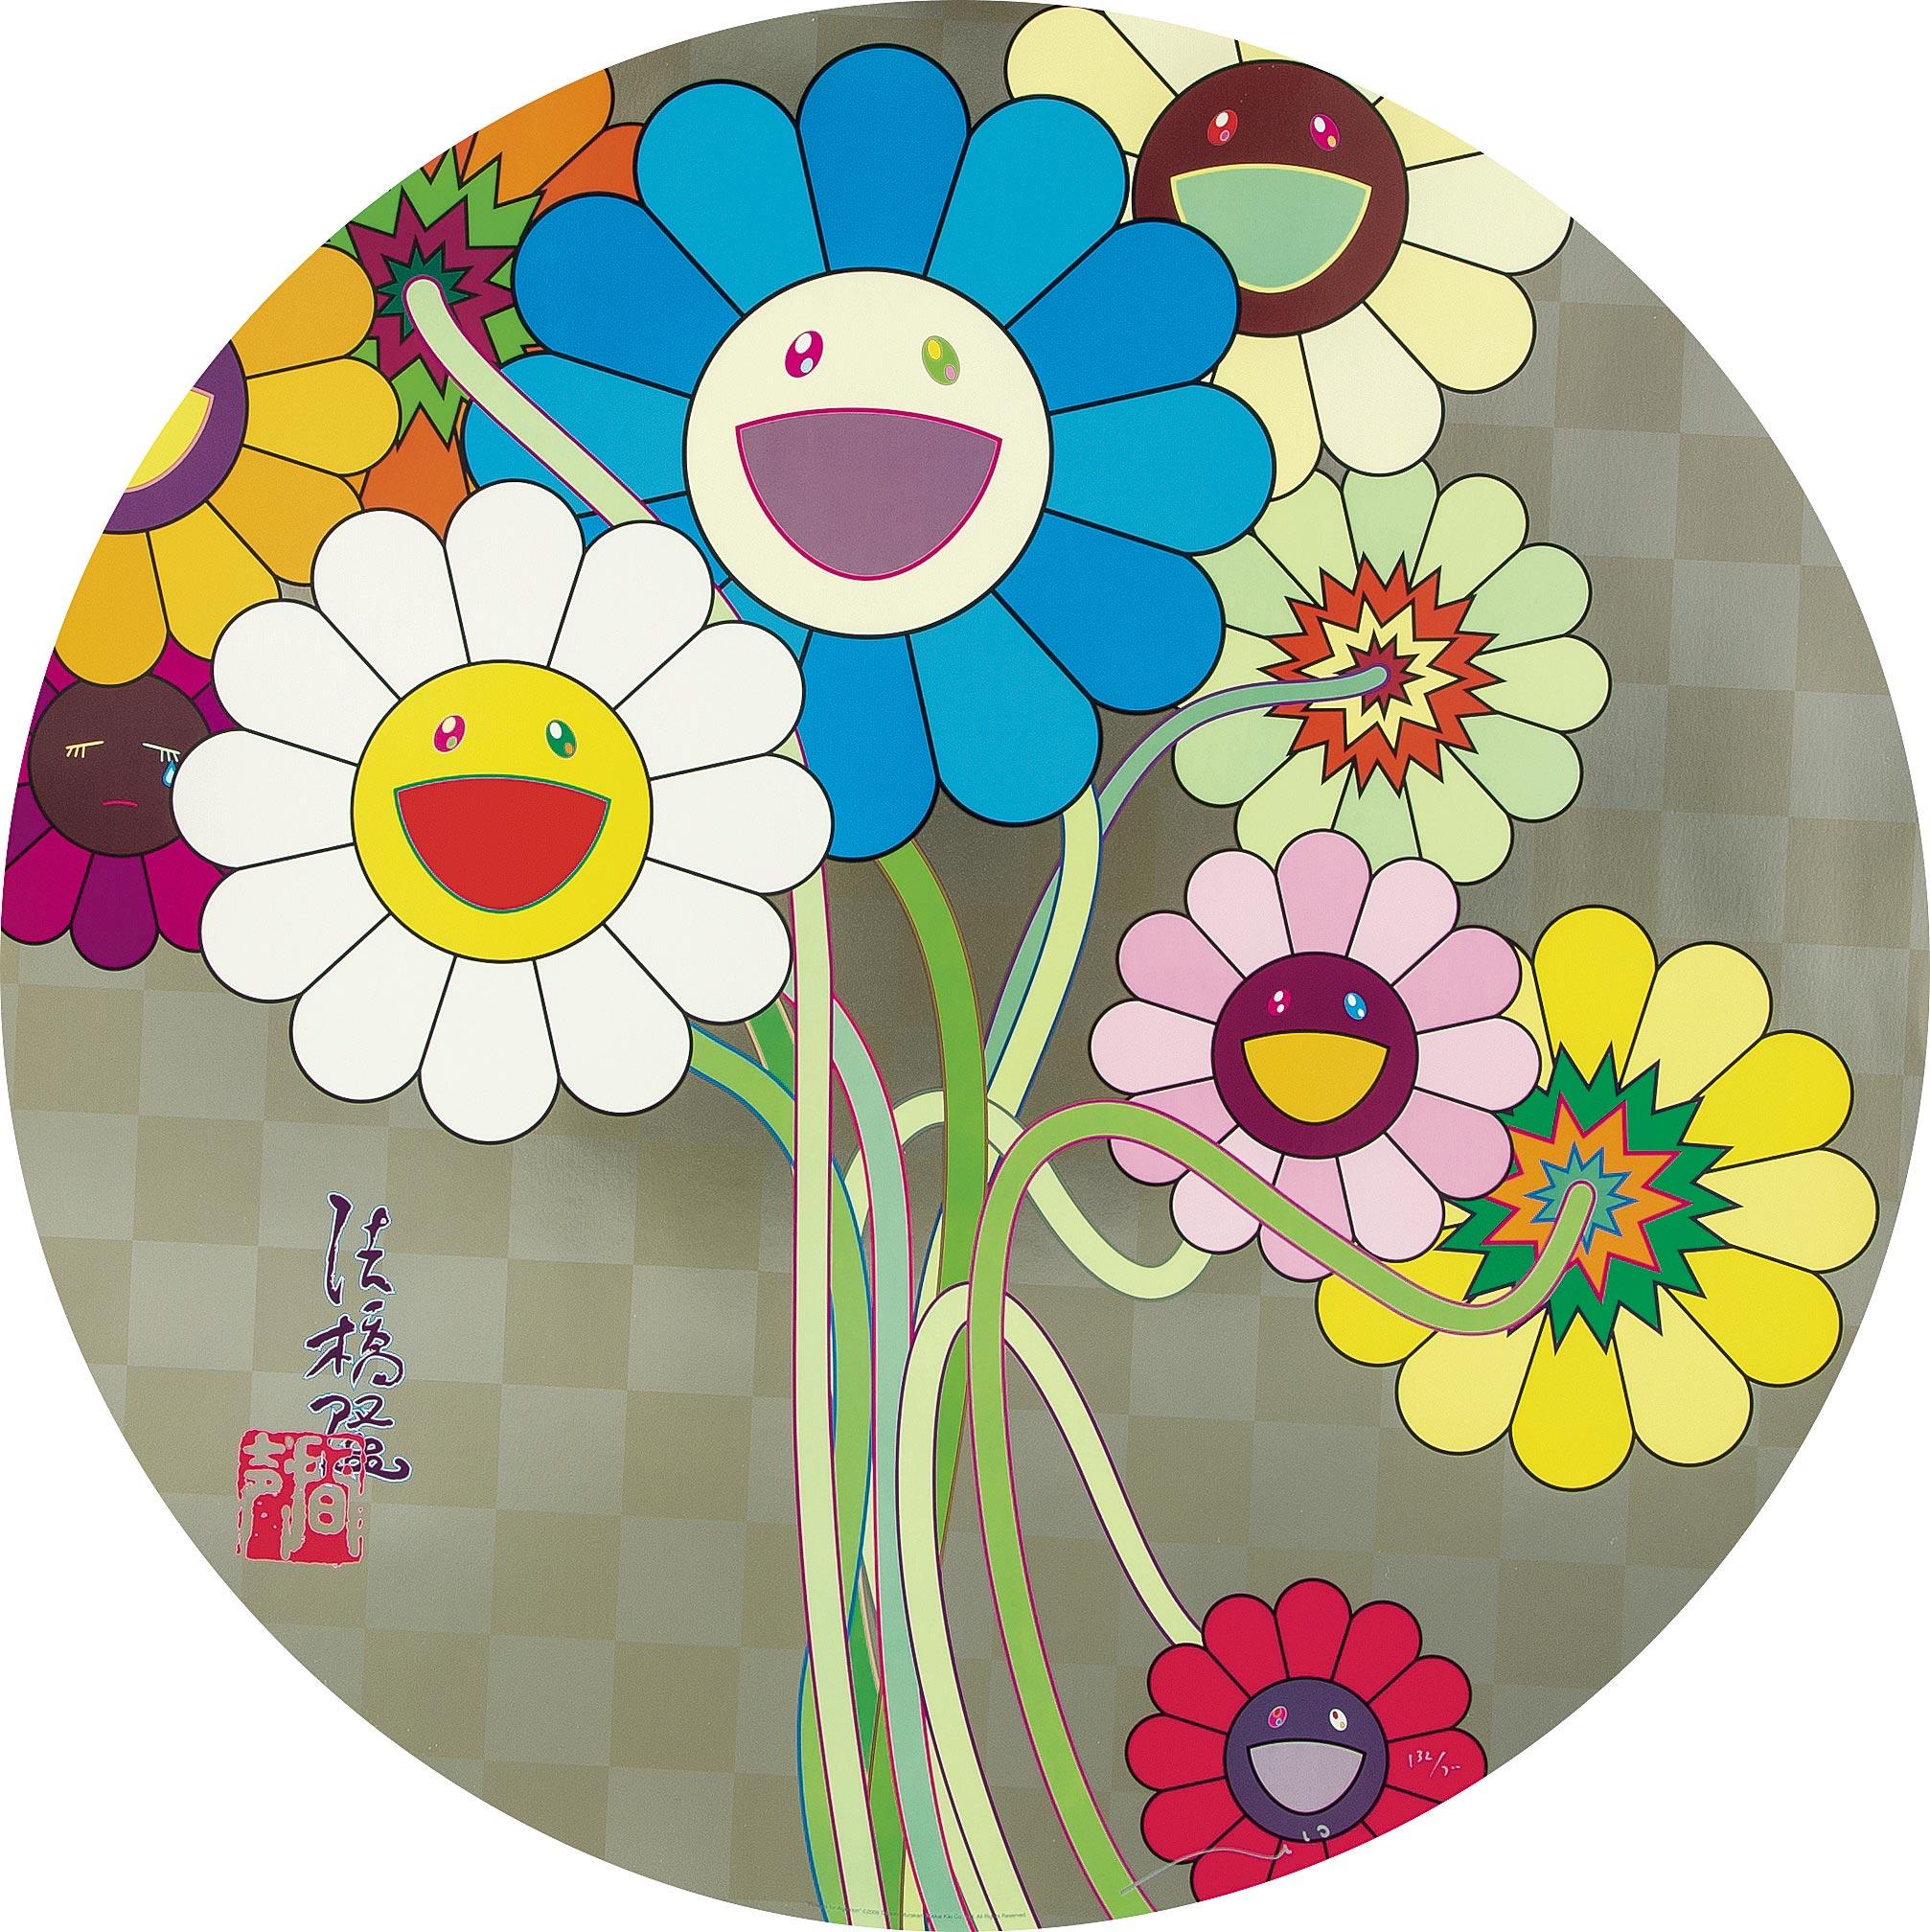 Blumen für Algernon
2009 von Takashi Murakami
Offsetdruck, Kaltprägung und Hochglanzlackierung mit Silberfarbe
signiert, nummeriert und gestempelt durch den Künstler
27 7/8 im Durchmesser
71 cm Durchmesser
Ausgabe  132/300

Takashi Murakami ist vor